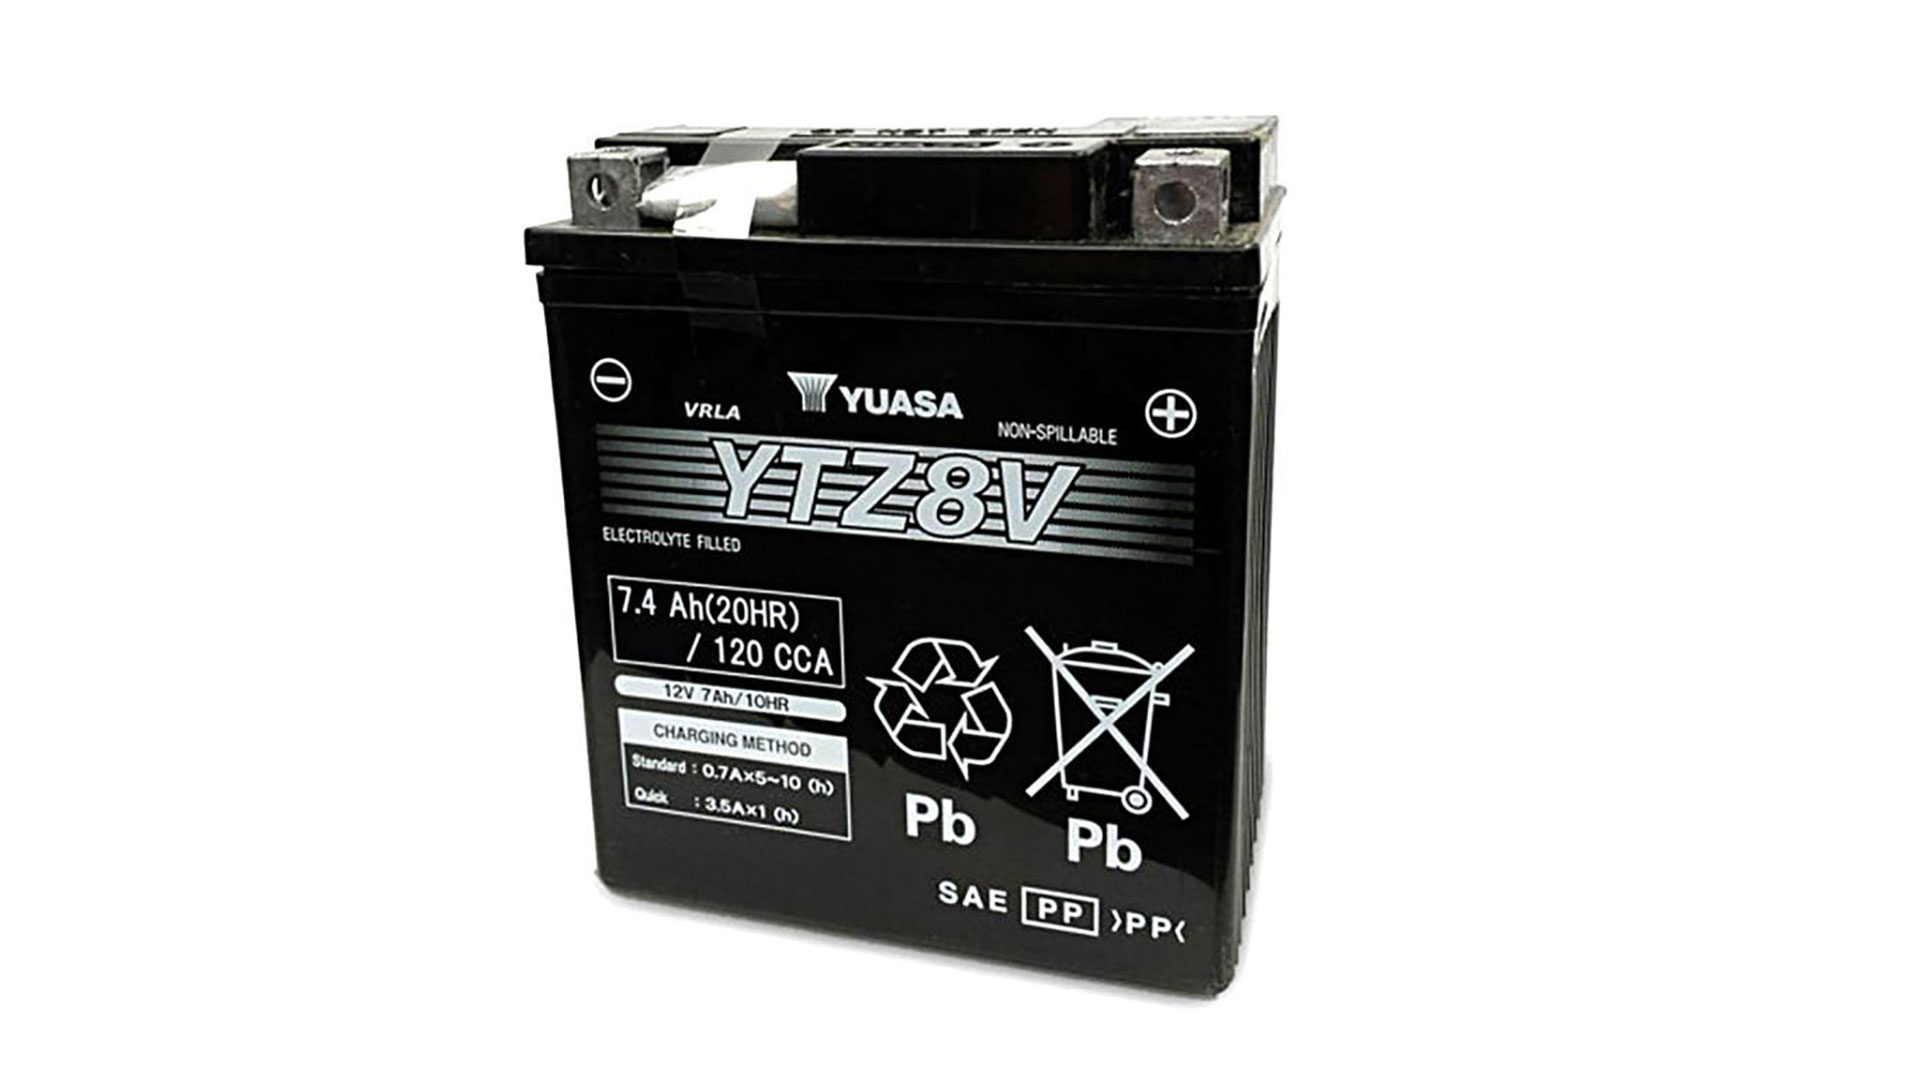  YTZ8V (WC) 12V Yuasa High Performance MF VRLA Battery 